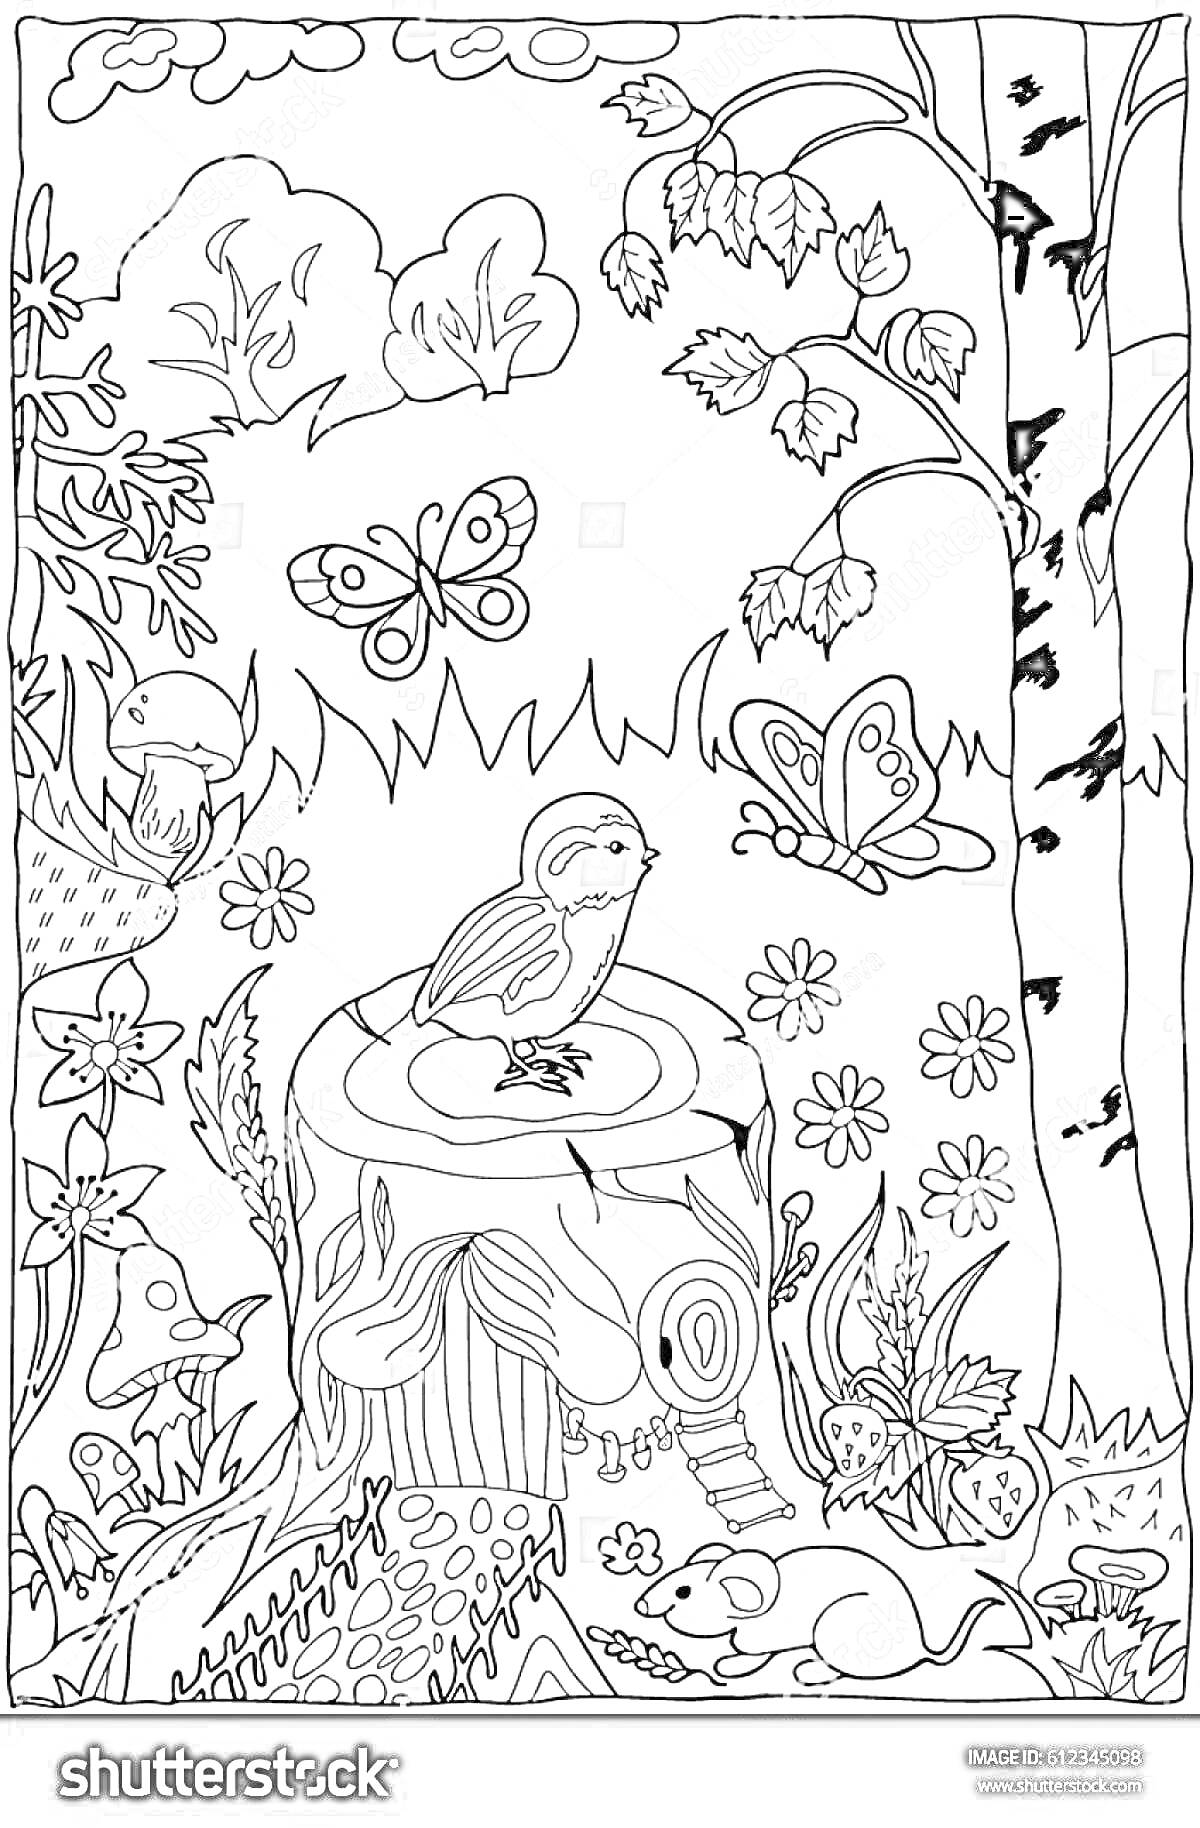 Раскраска Пейзаж с птицей на пне, двумя бабочками, цветами, деревьями и кустарниками